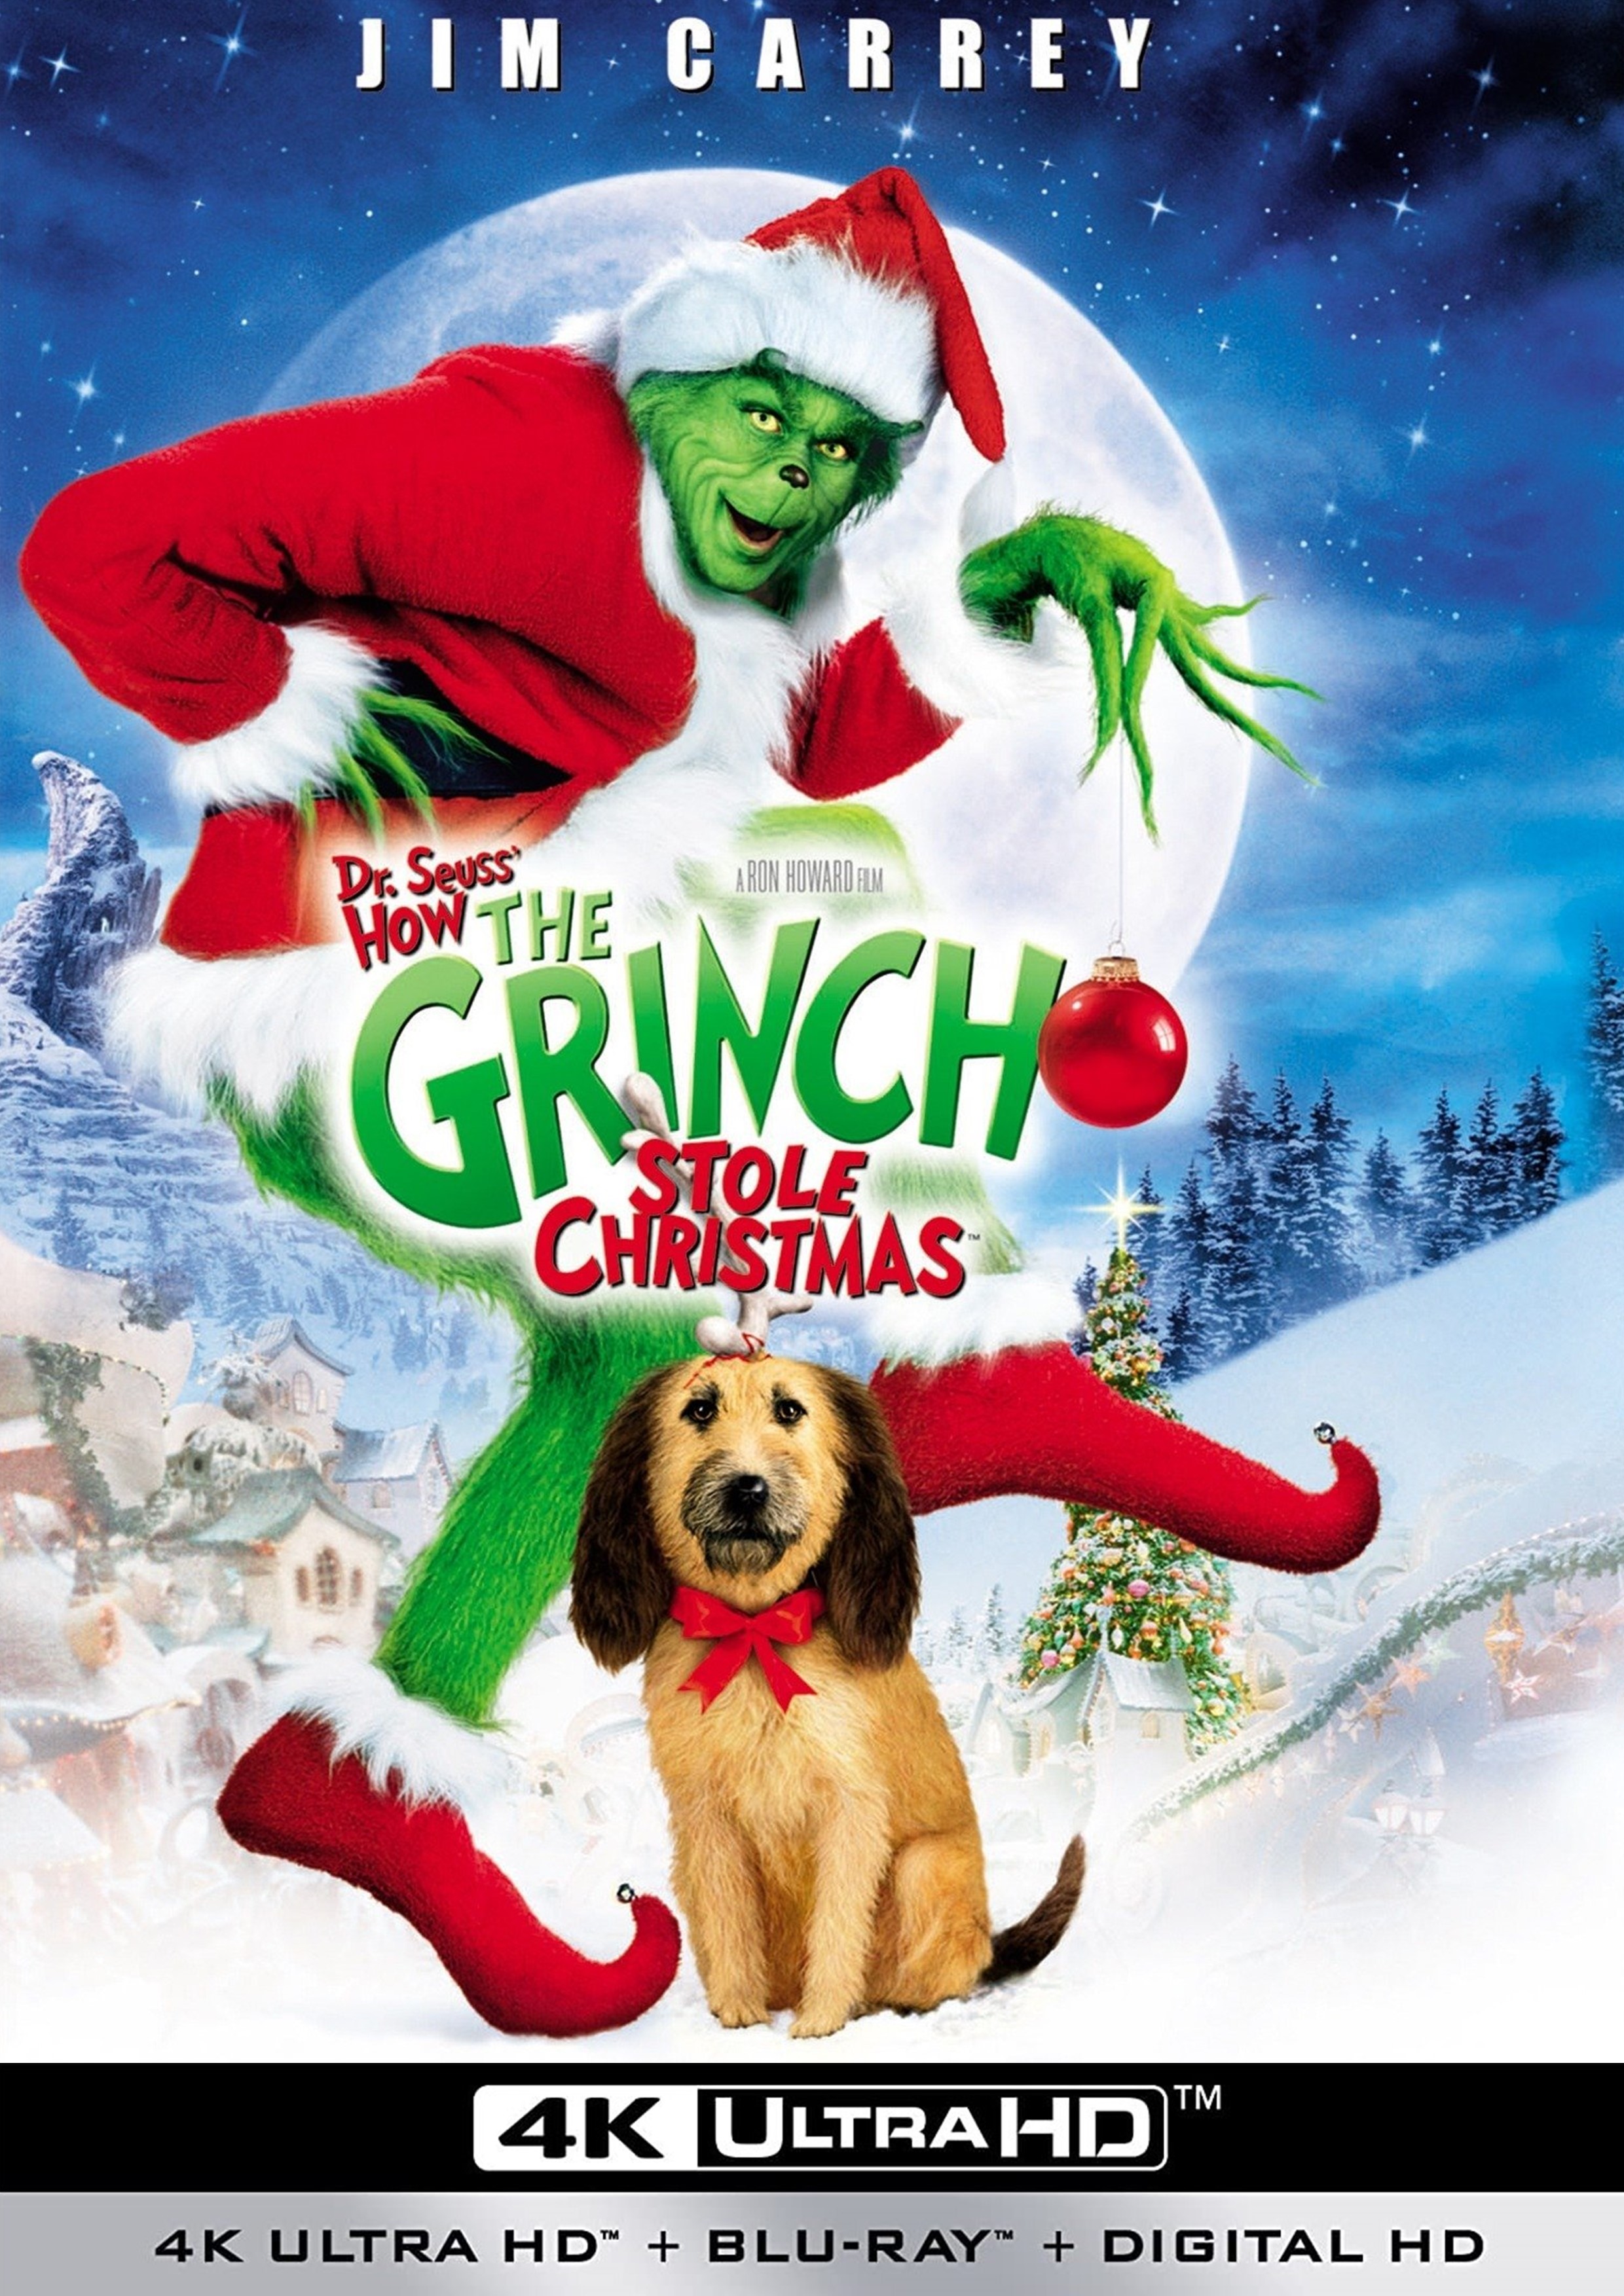 Stiahni si UHD Filmy Grinch / How the Grinch Stole Christmas (2000)(CZ/EN)(2160p 4K BRRip) = CSFD 60%